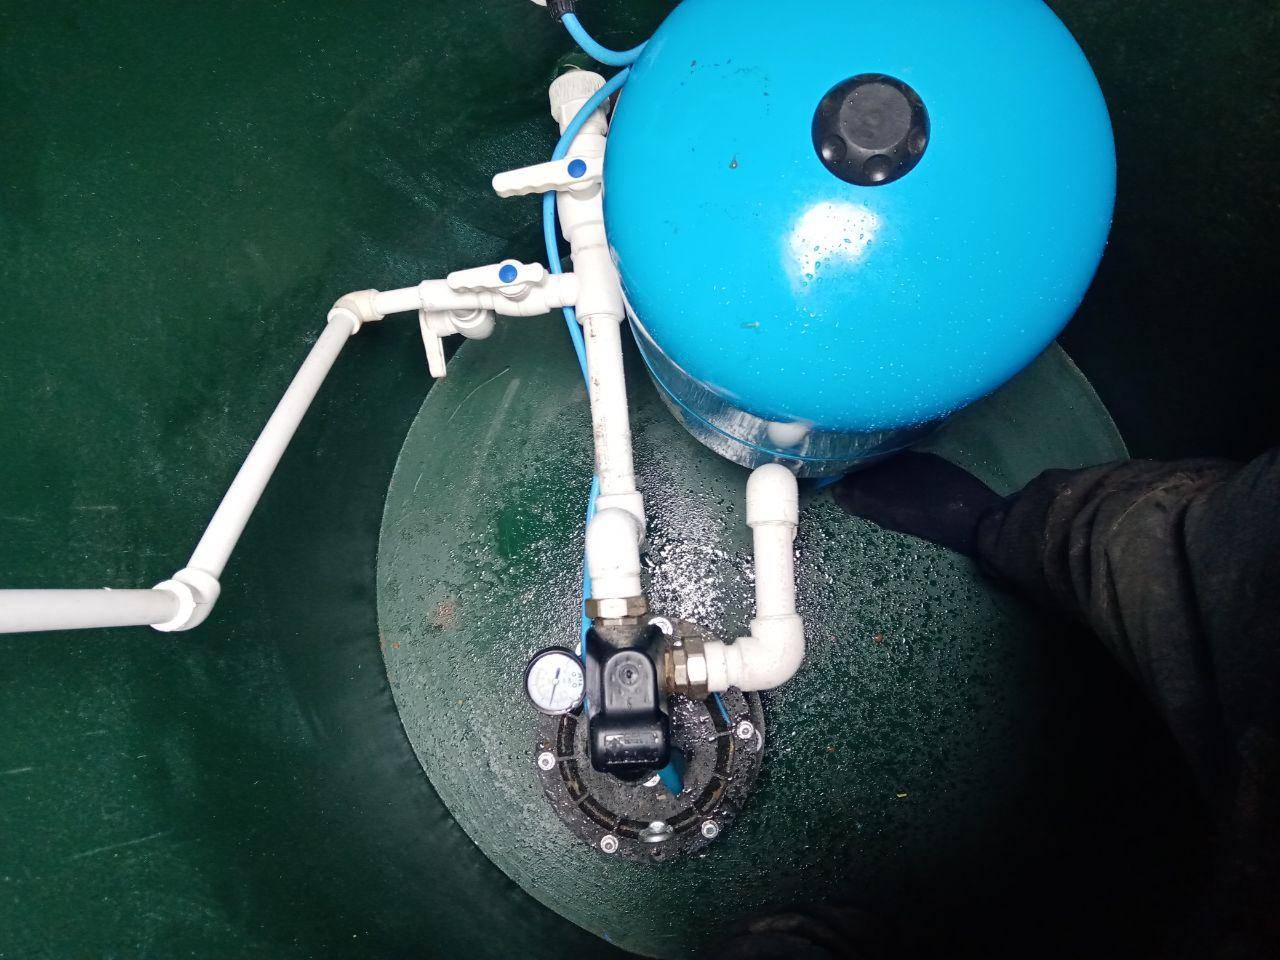 Кессон или скважинный адаптер - что лучше выбрать при  оборудовании и обустройстве скважины с водой